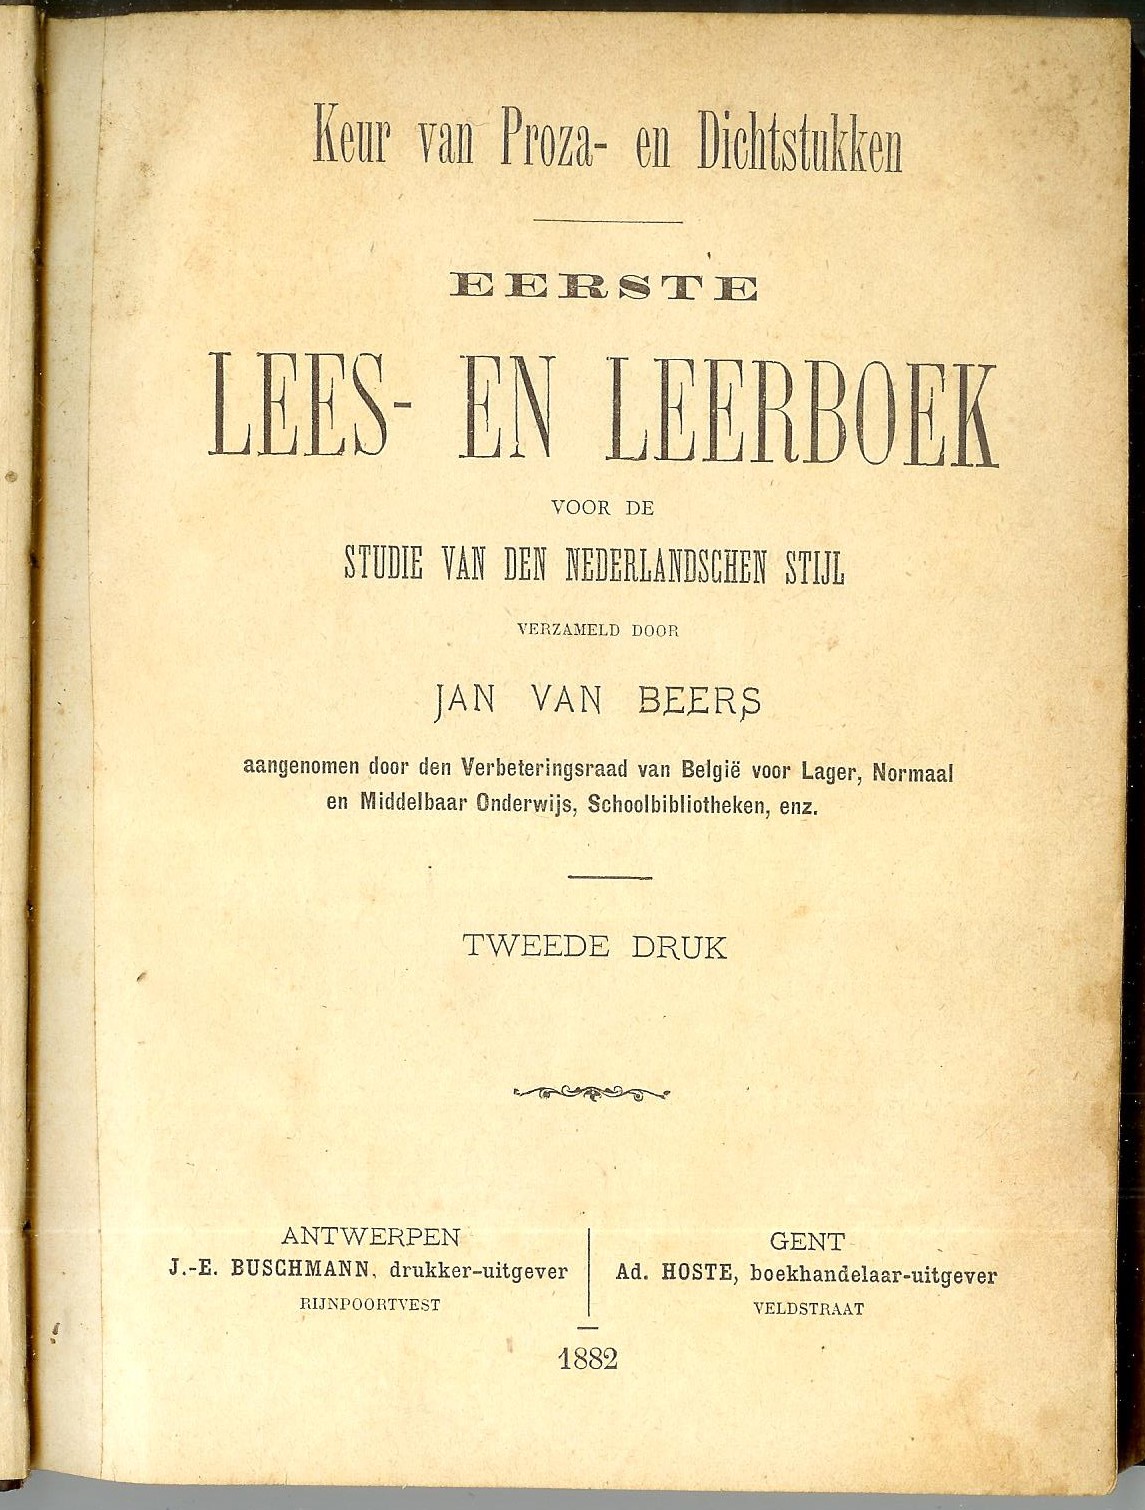 1882 Van Beers 2